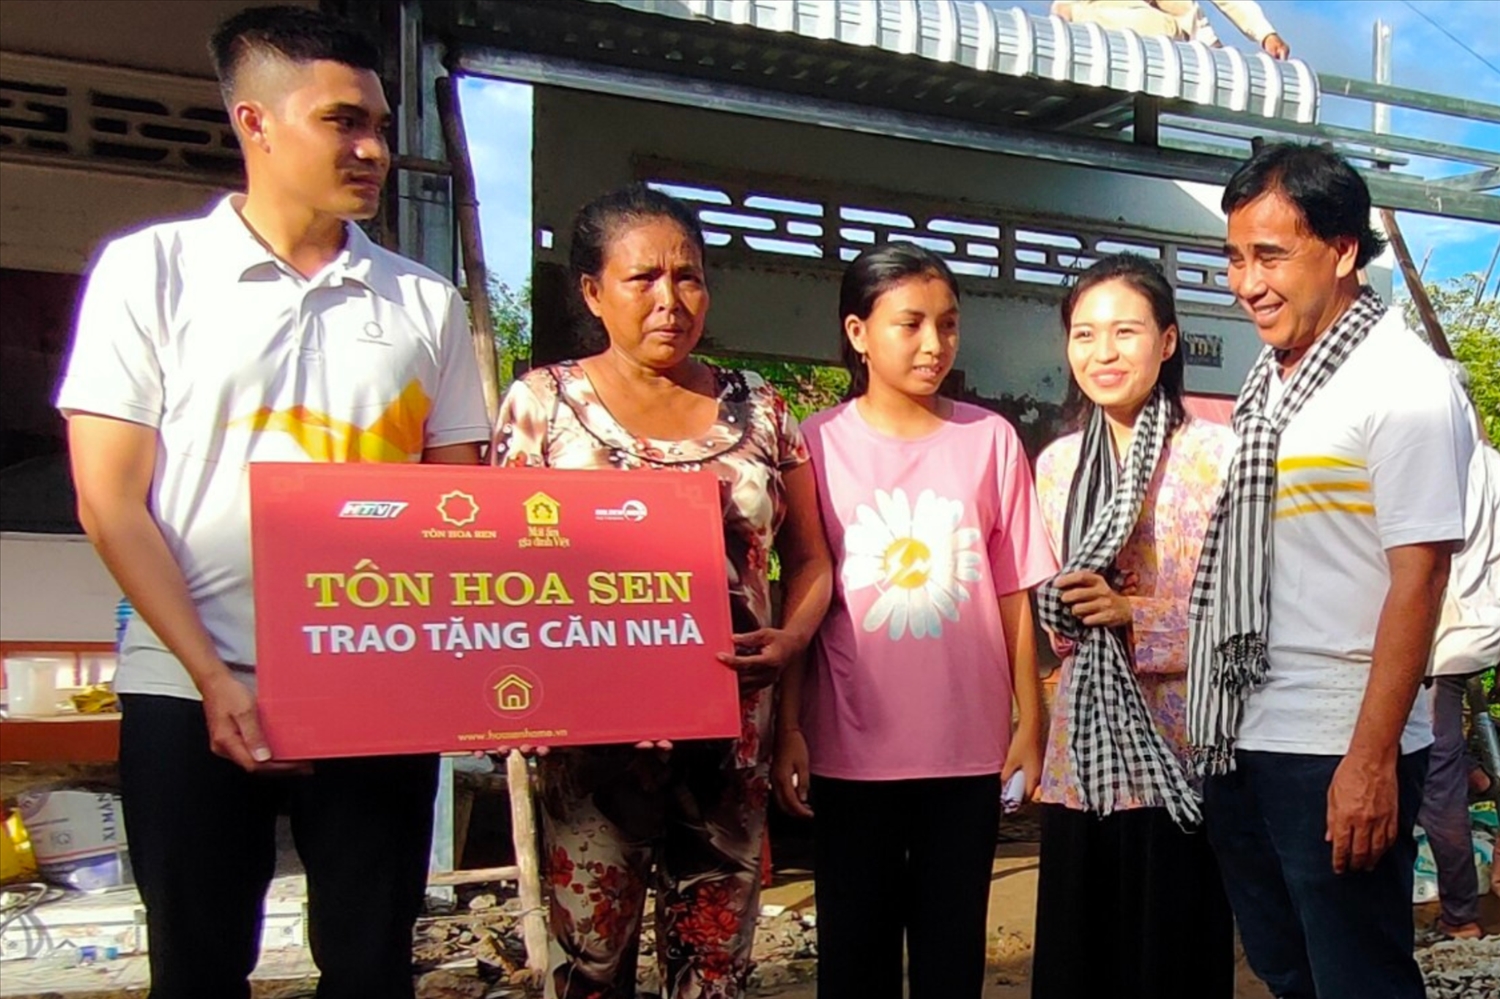 Đại diện Tập đoàn Hoa Sen, MC Quyền Linh, diễn viên Lê Lộc phối hợp với chính quyền địa phương cùng đến trao tặng “Mái ấm” cho gia đình em Danh Thị Nol